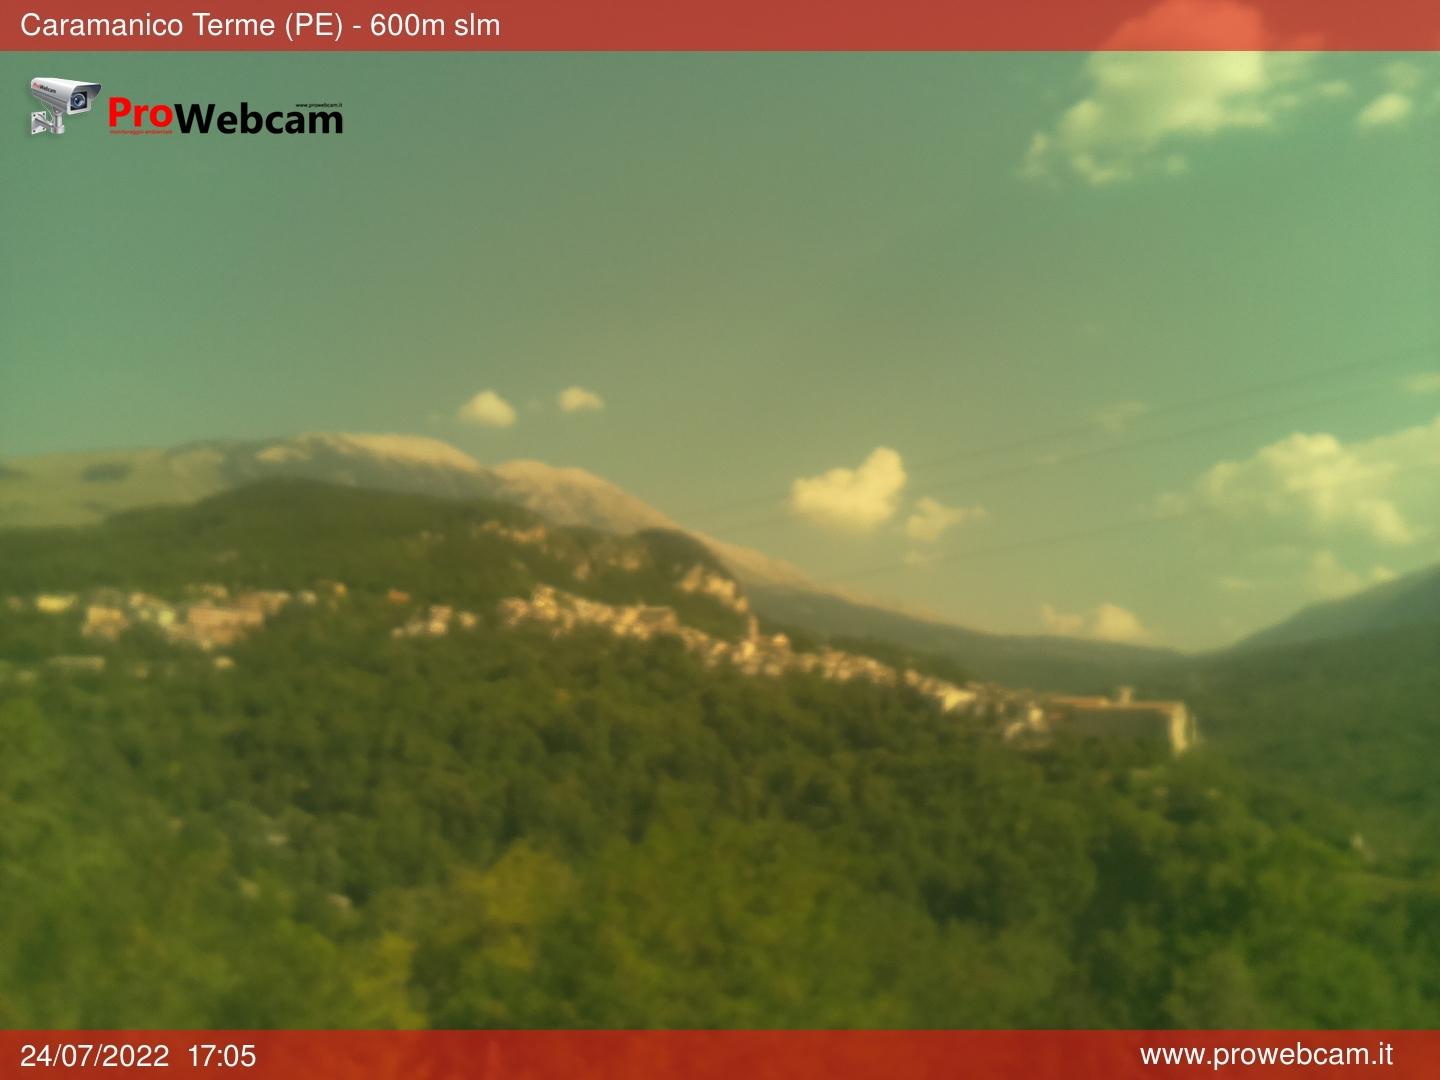 Webcam Sibillini” width=